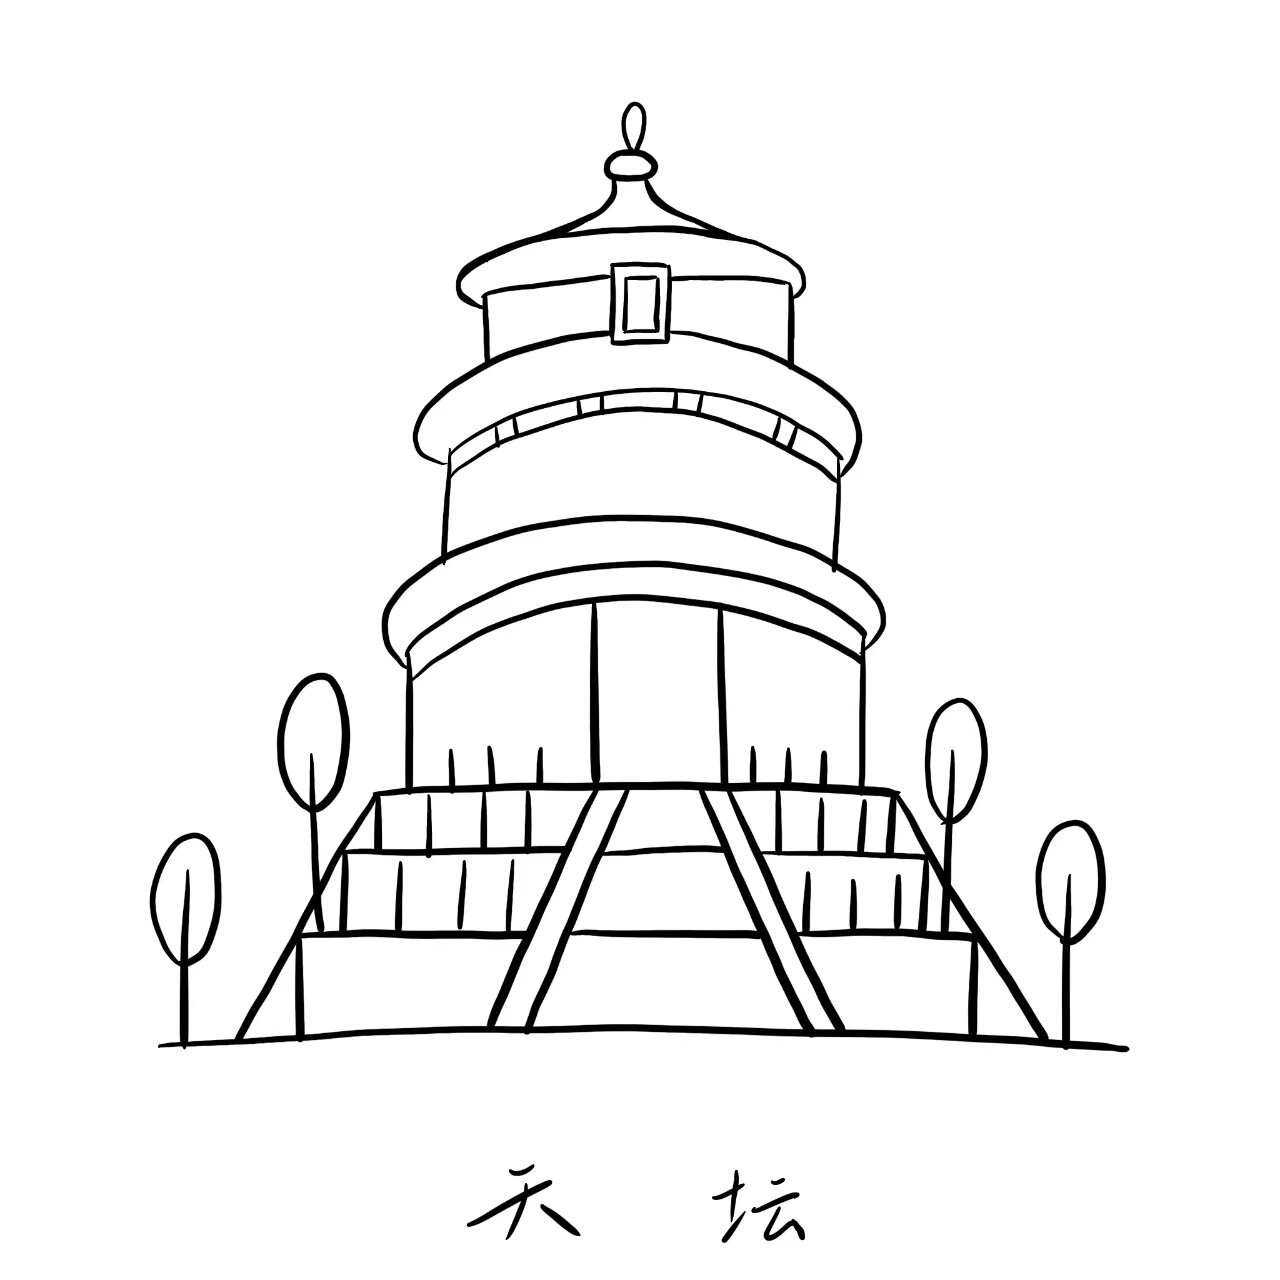 中国标志性建筑简笔画图片